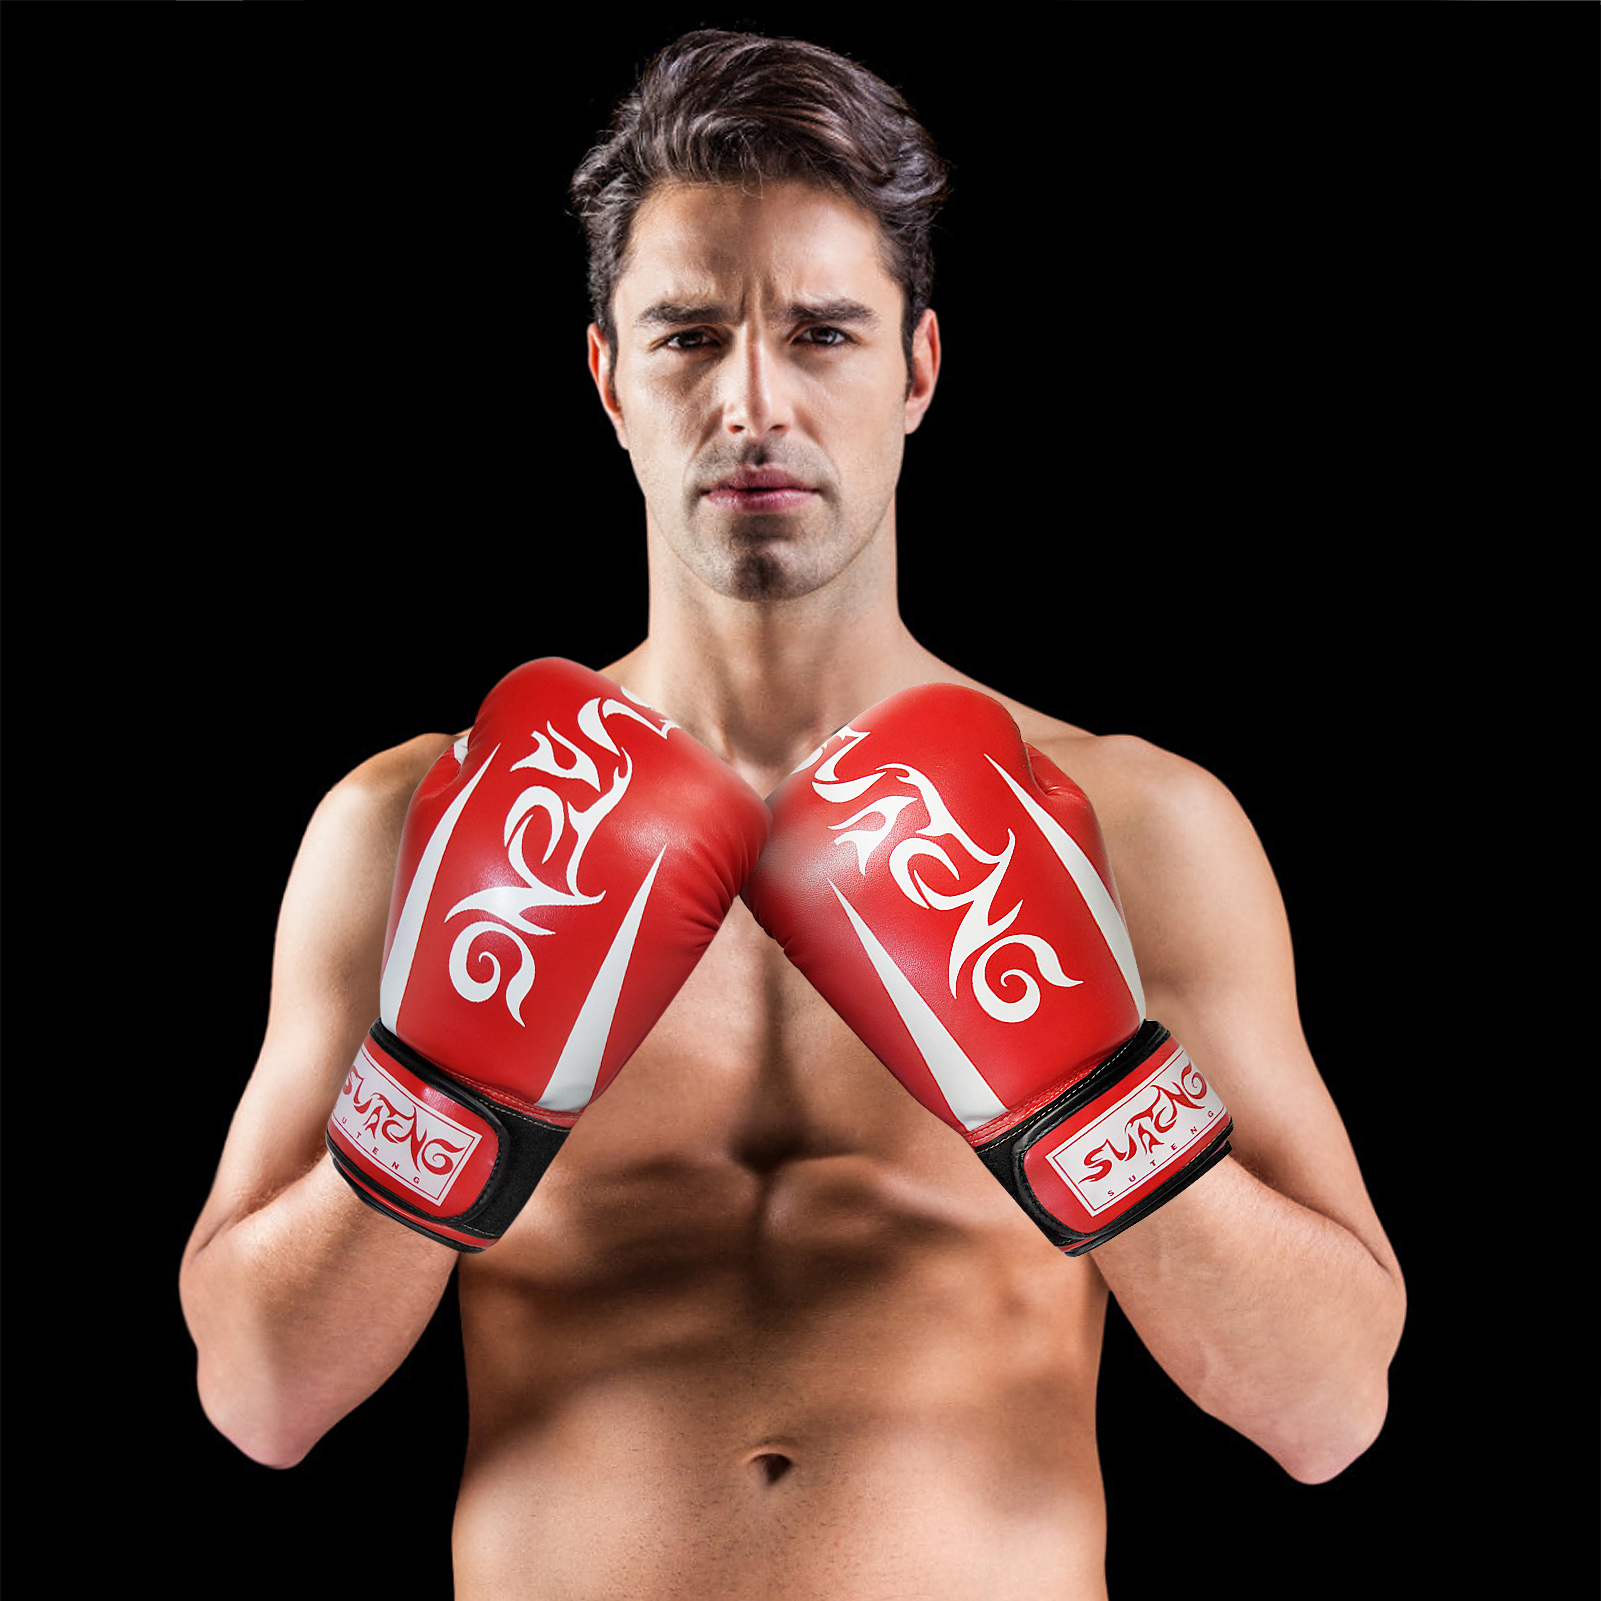 Găng tay quyền anh, Muay Thai dùng trong huẩn luyện, tập boxing